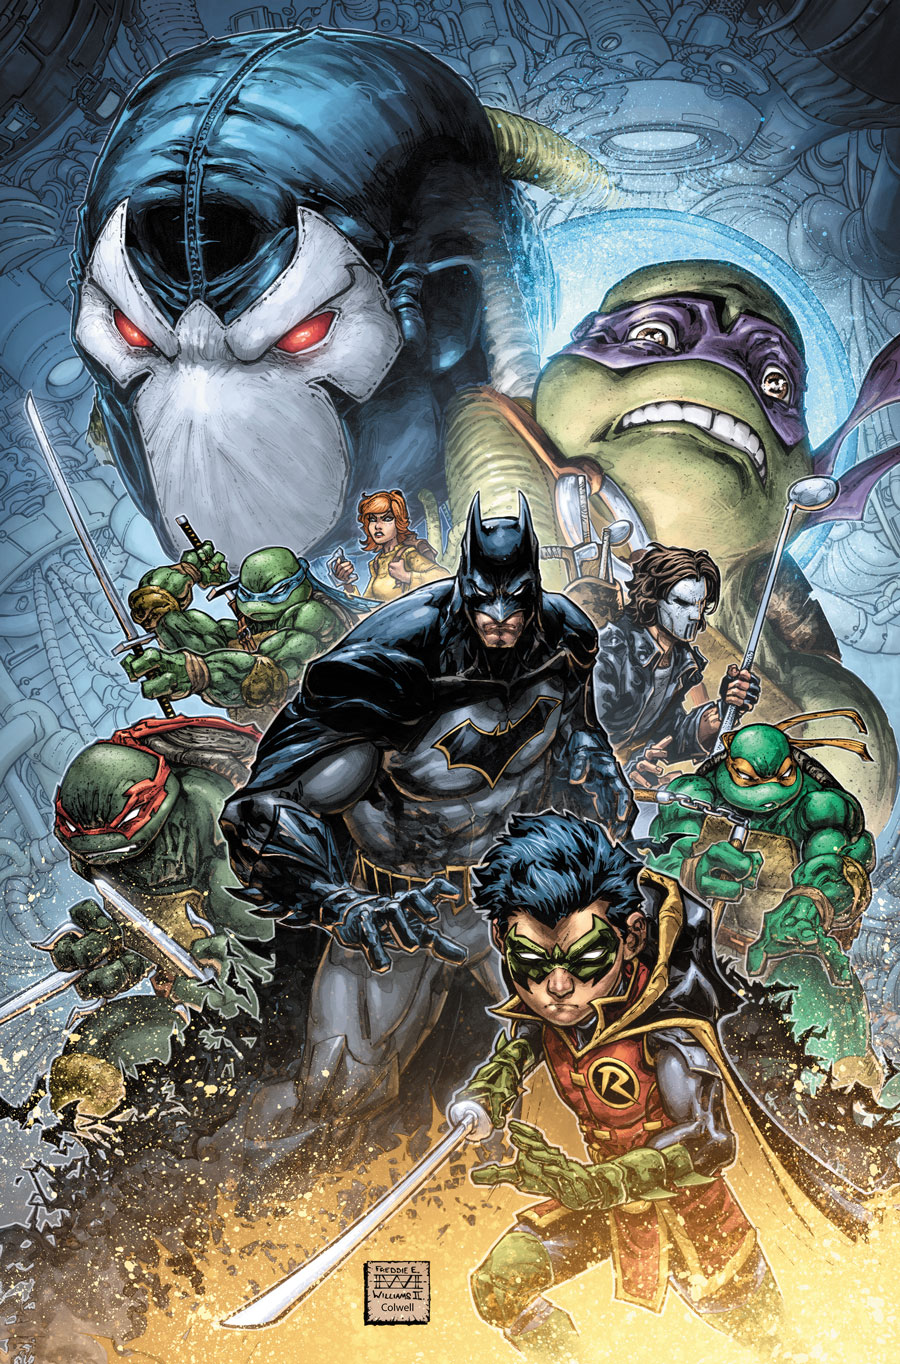 Batman Teenage Mutant Ninja Turtles 2 #1_Cv1 by Freddie Willams II and Jeremy Colwell